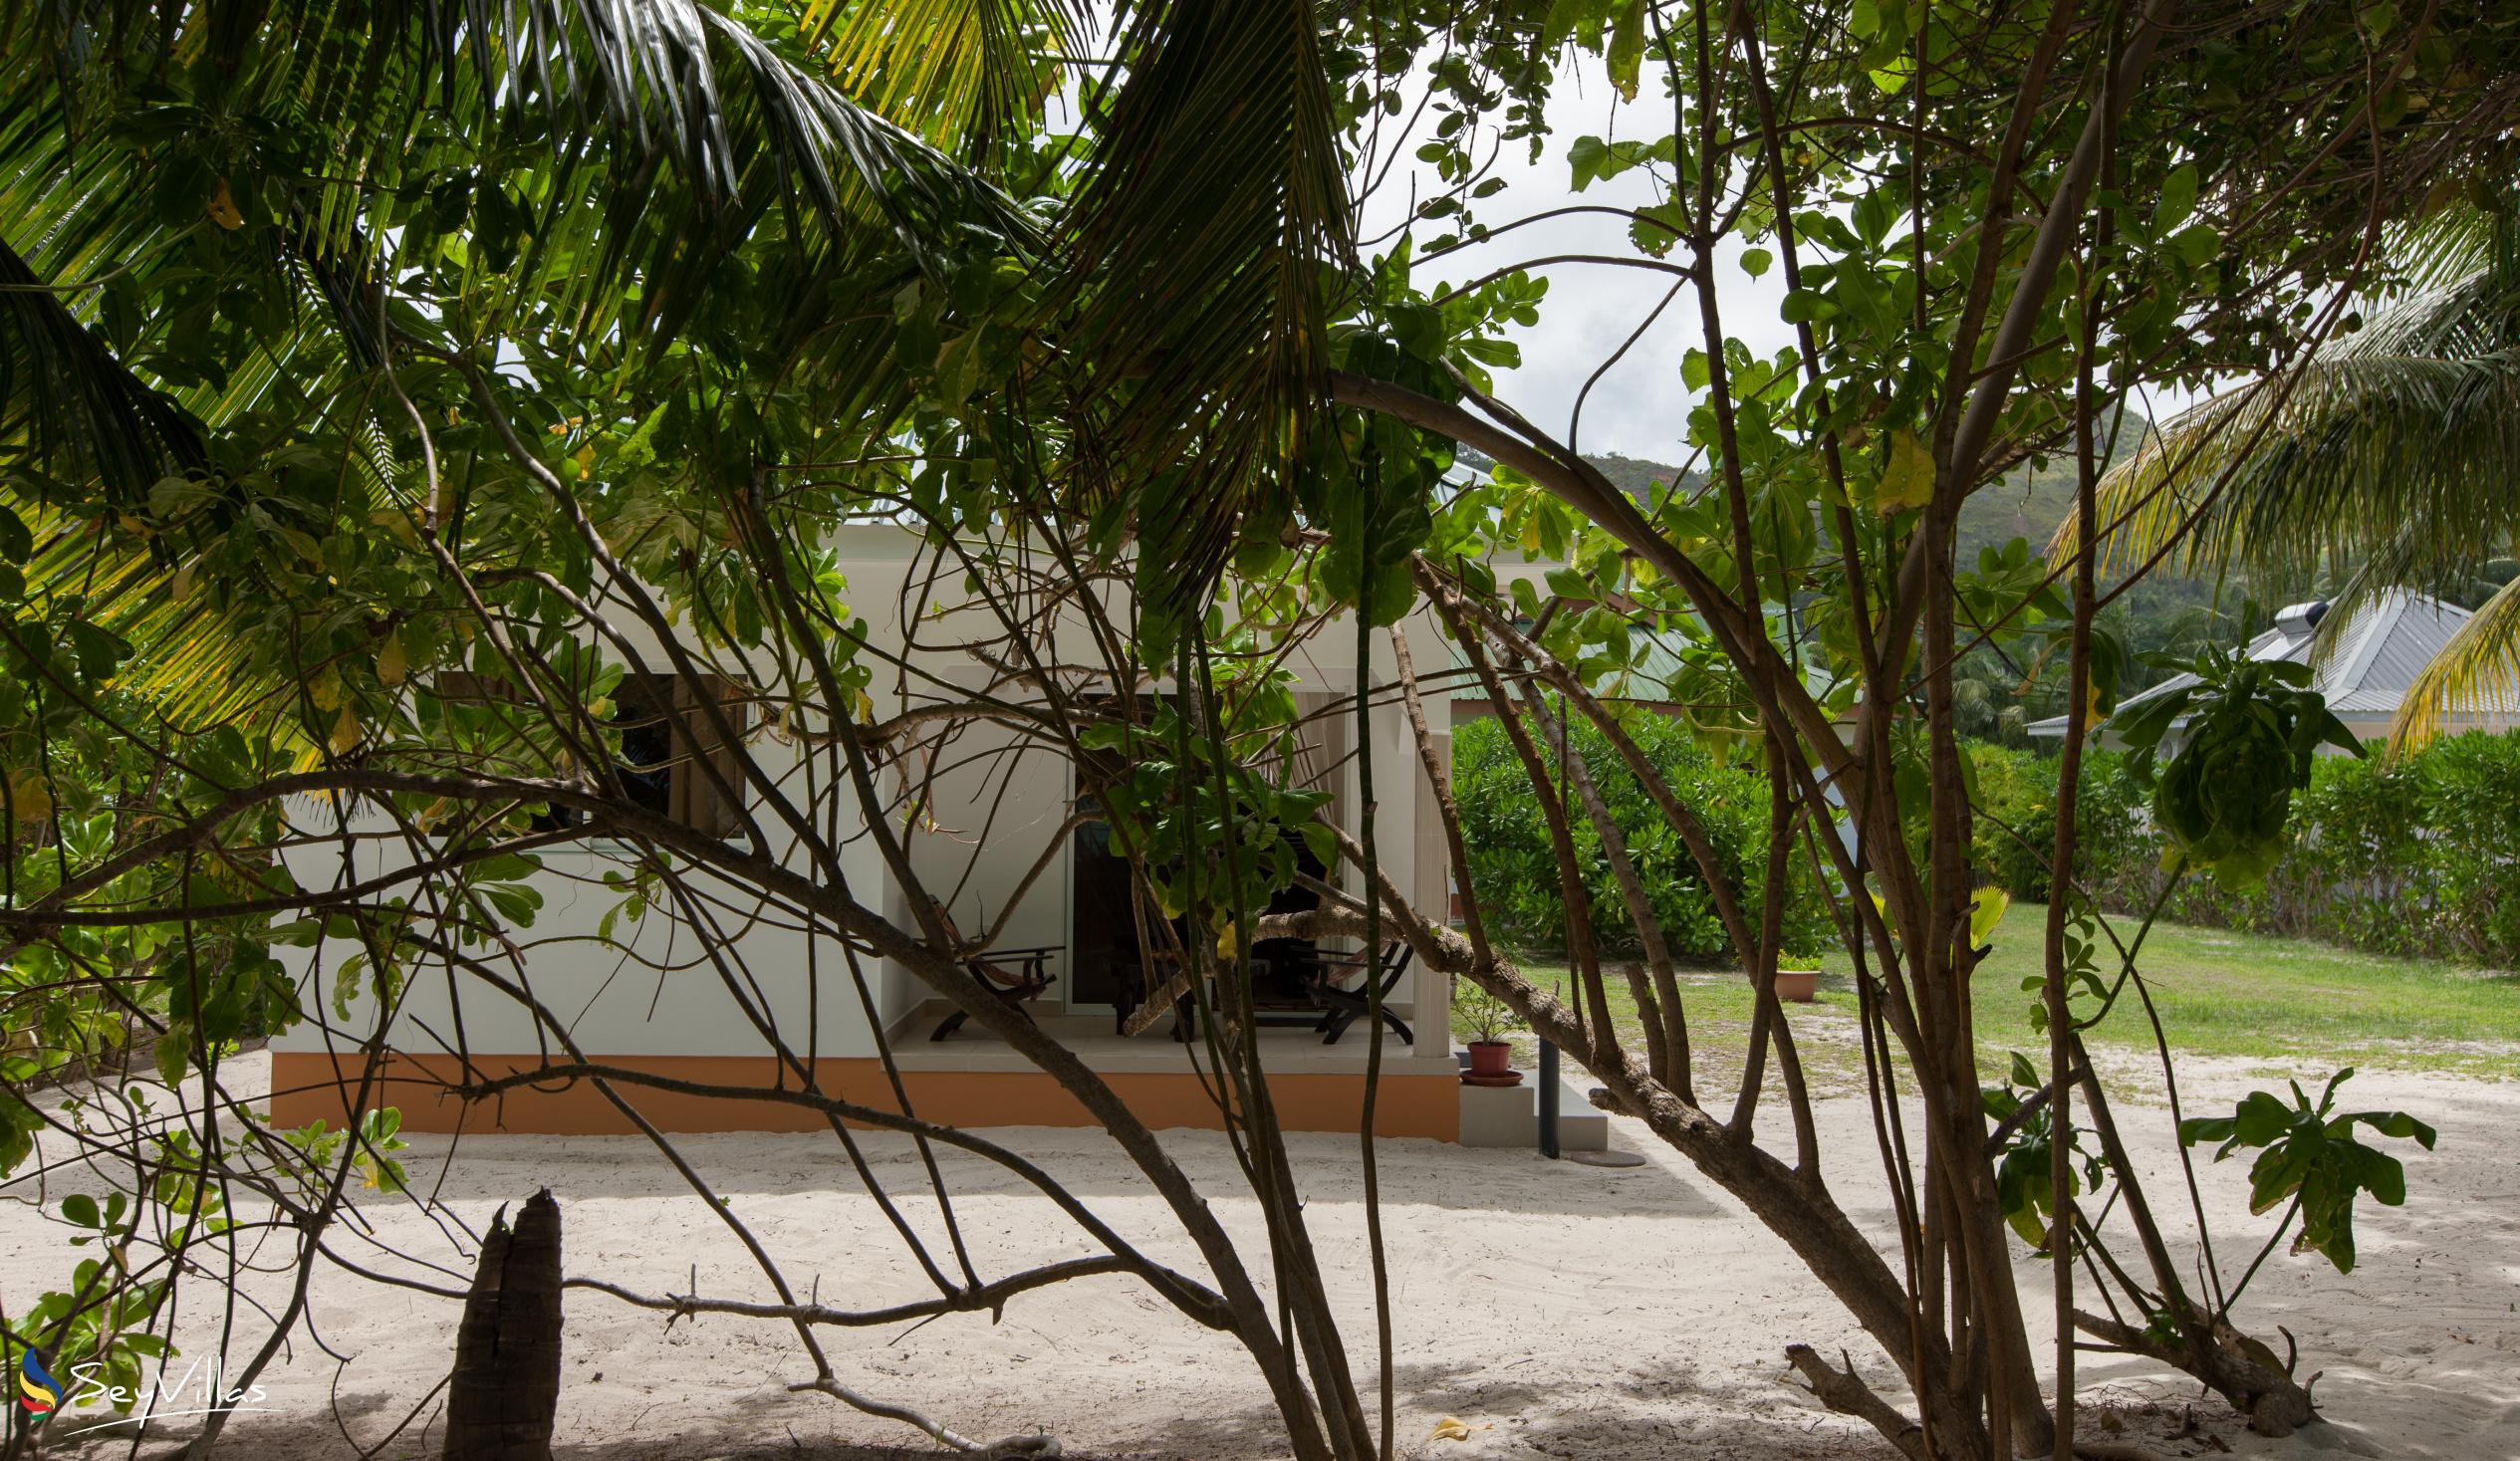 Foto 8: Villa Admiral - Aussenbereich - Praslin (Seychellen)